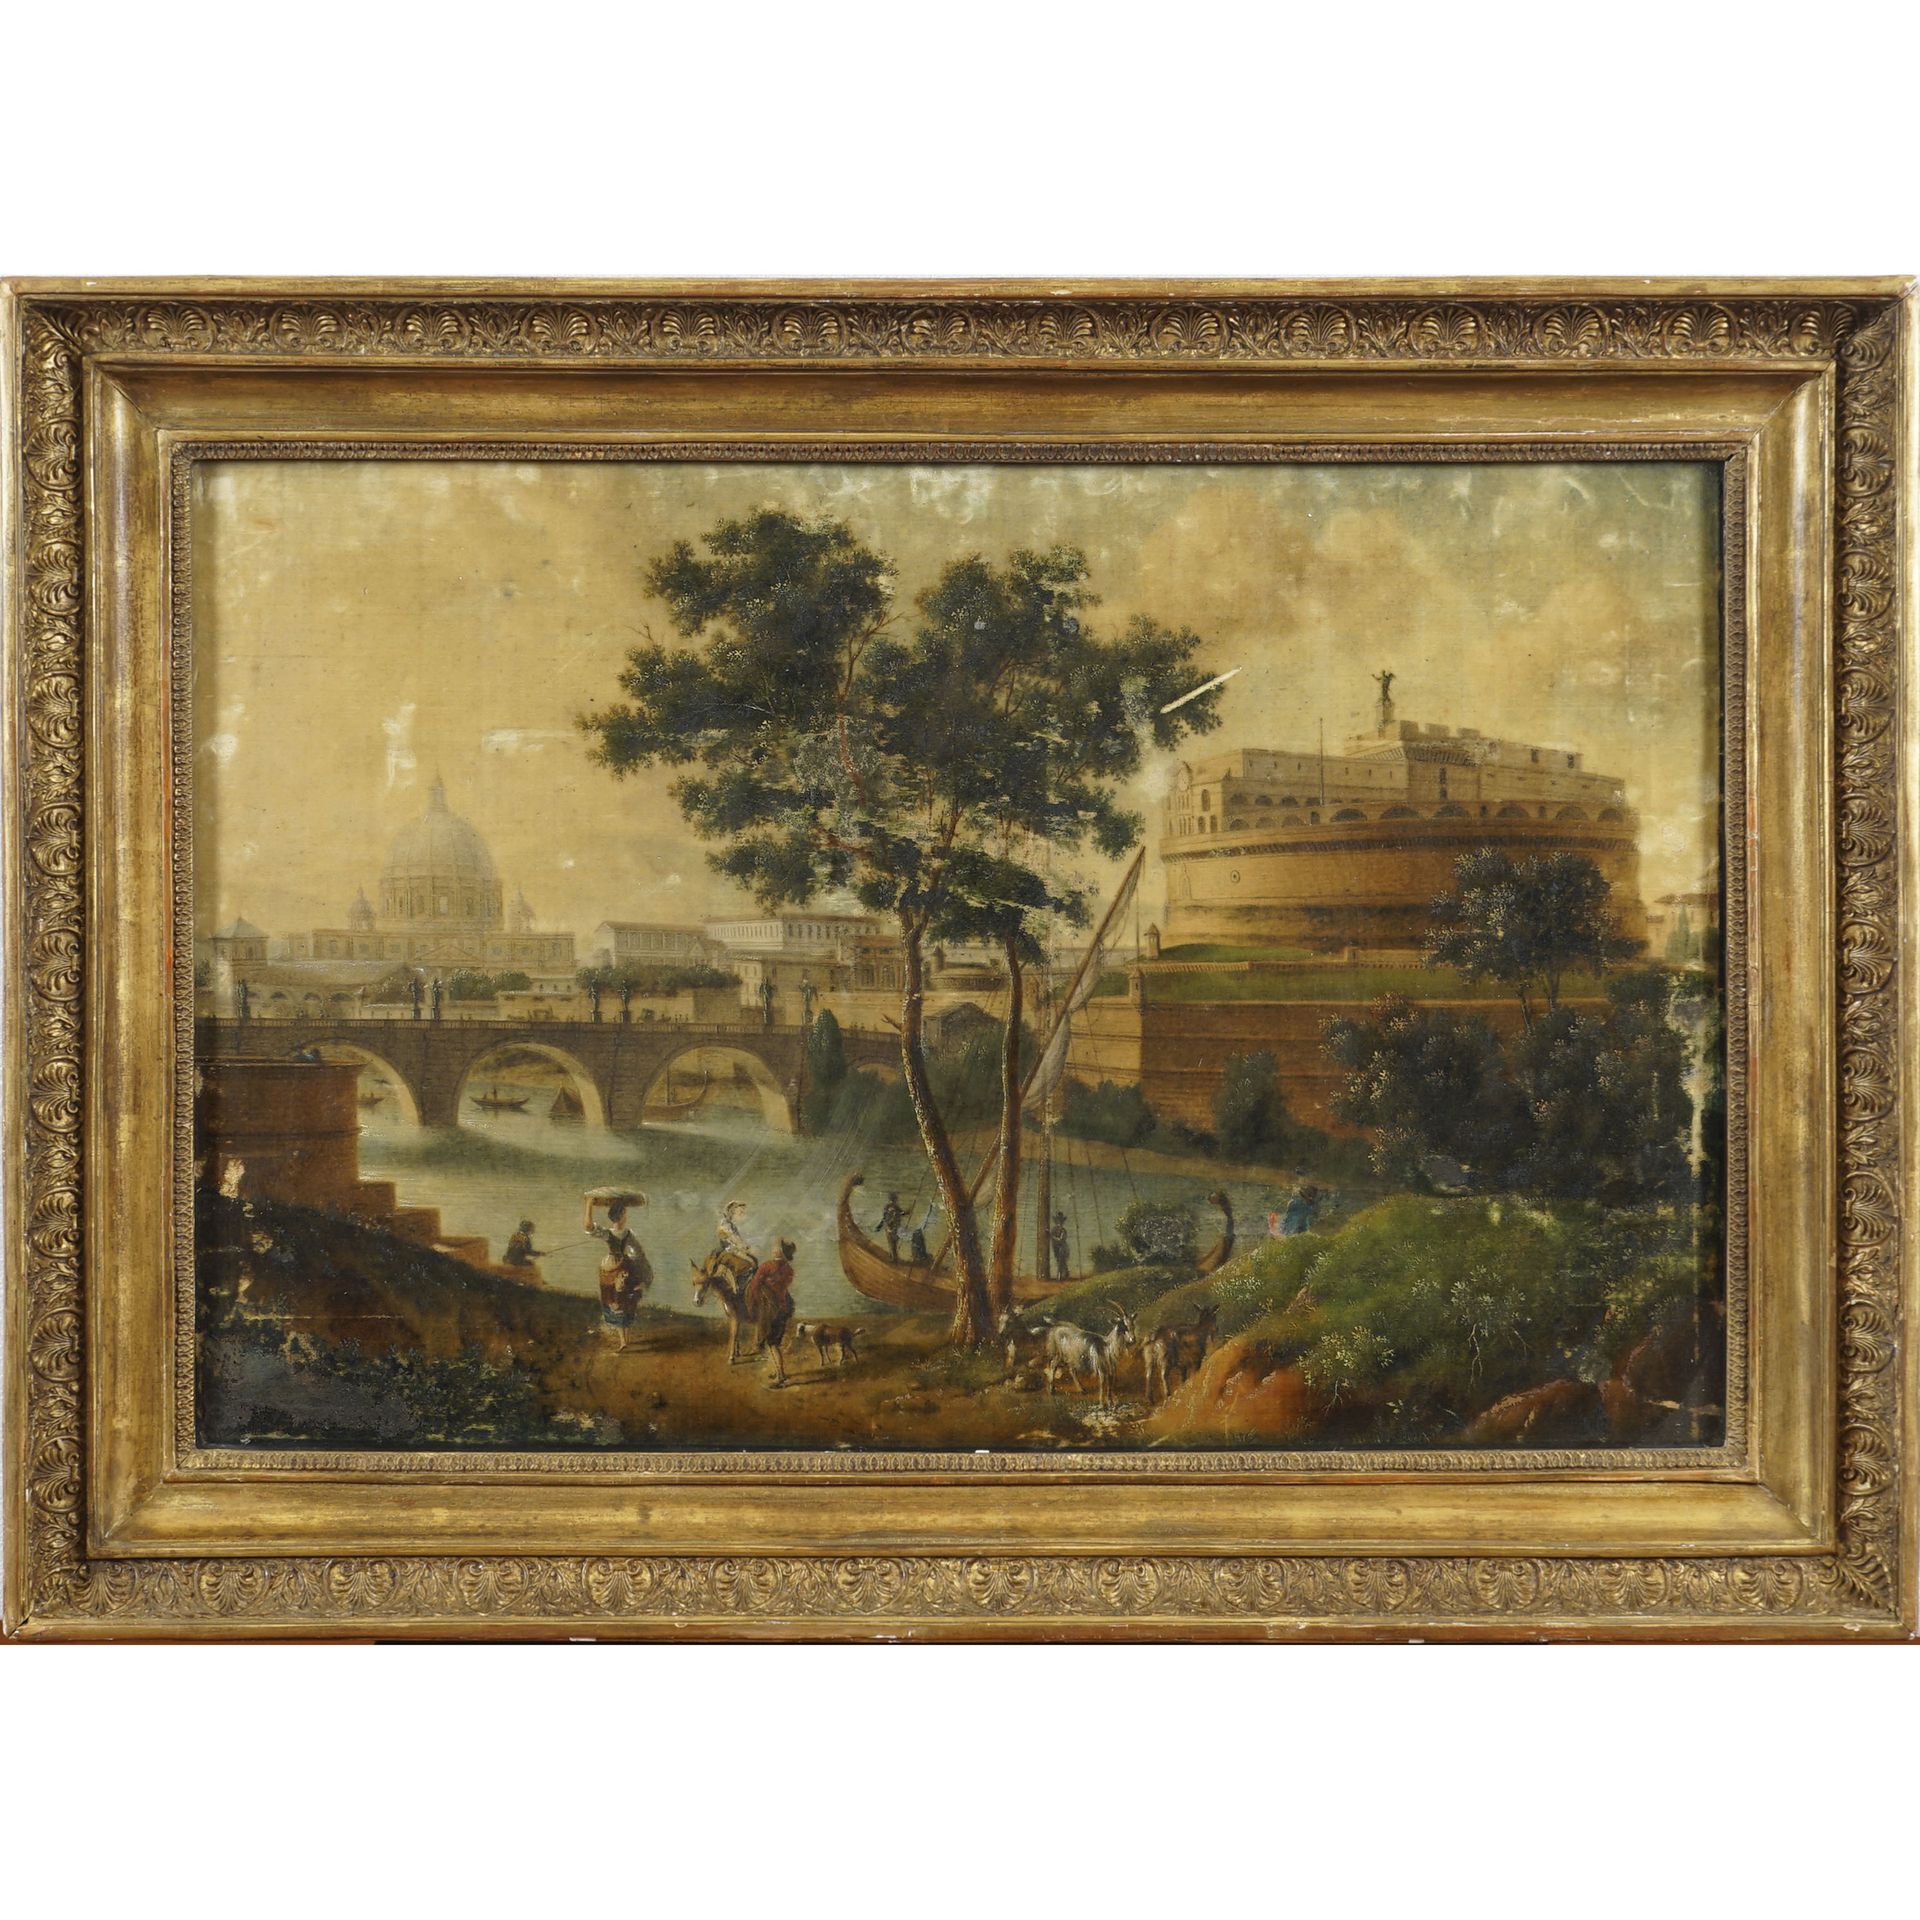 Roman painter XIX Century 56x84 cm "圣安杰洛城堡之景"，布面油画，金丝楠木框架内_x000D_。

这幅画的保存状况良好，只&hellip;